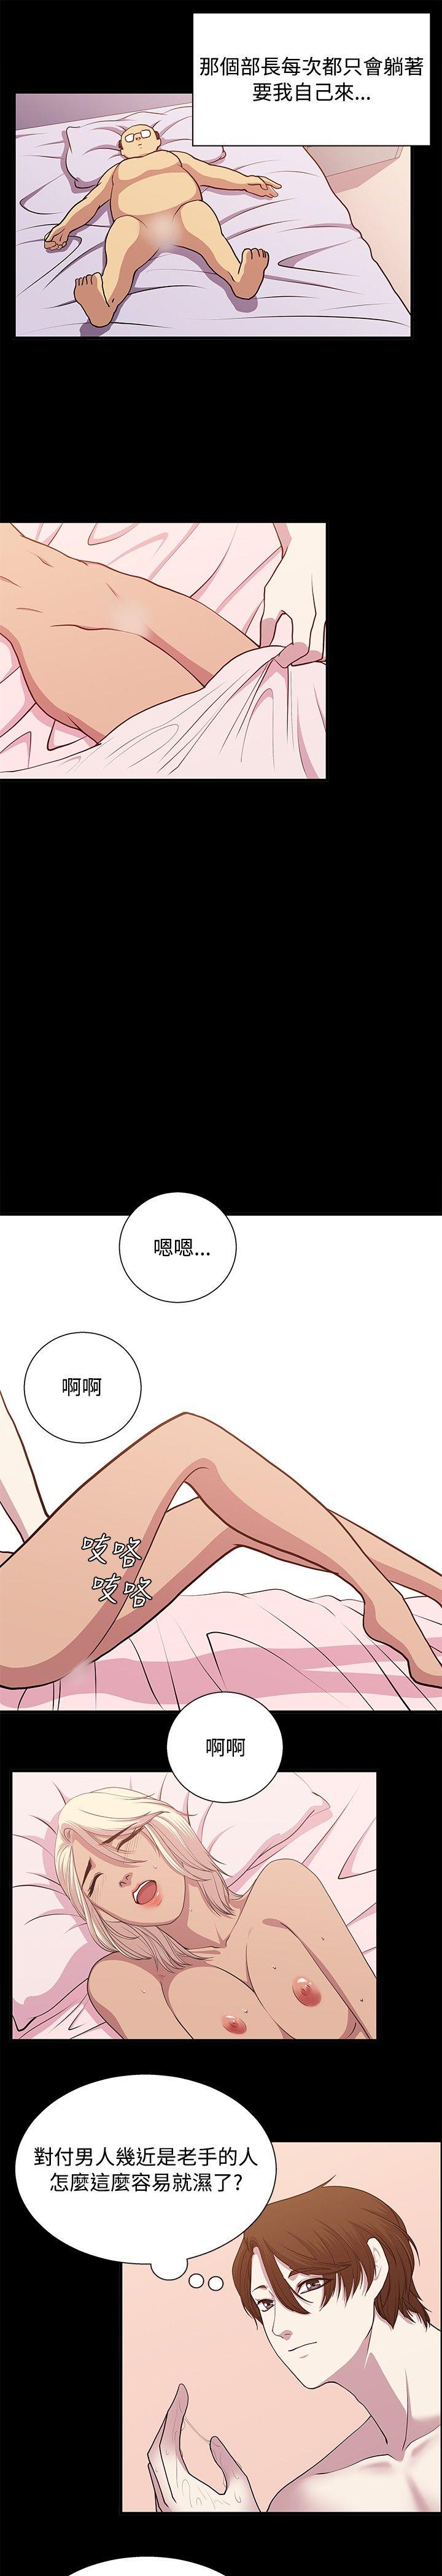 韩国污漫画 贊助者 第21话 13